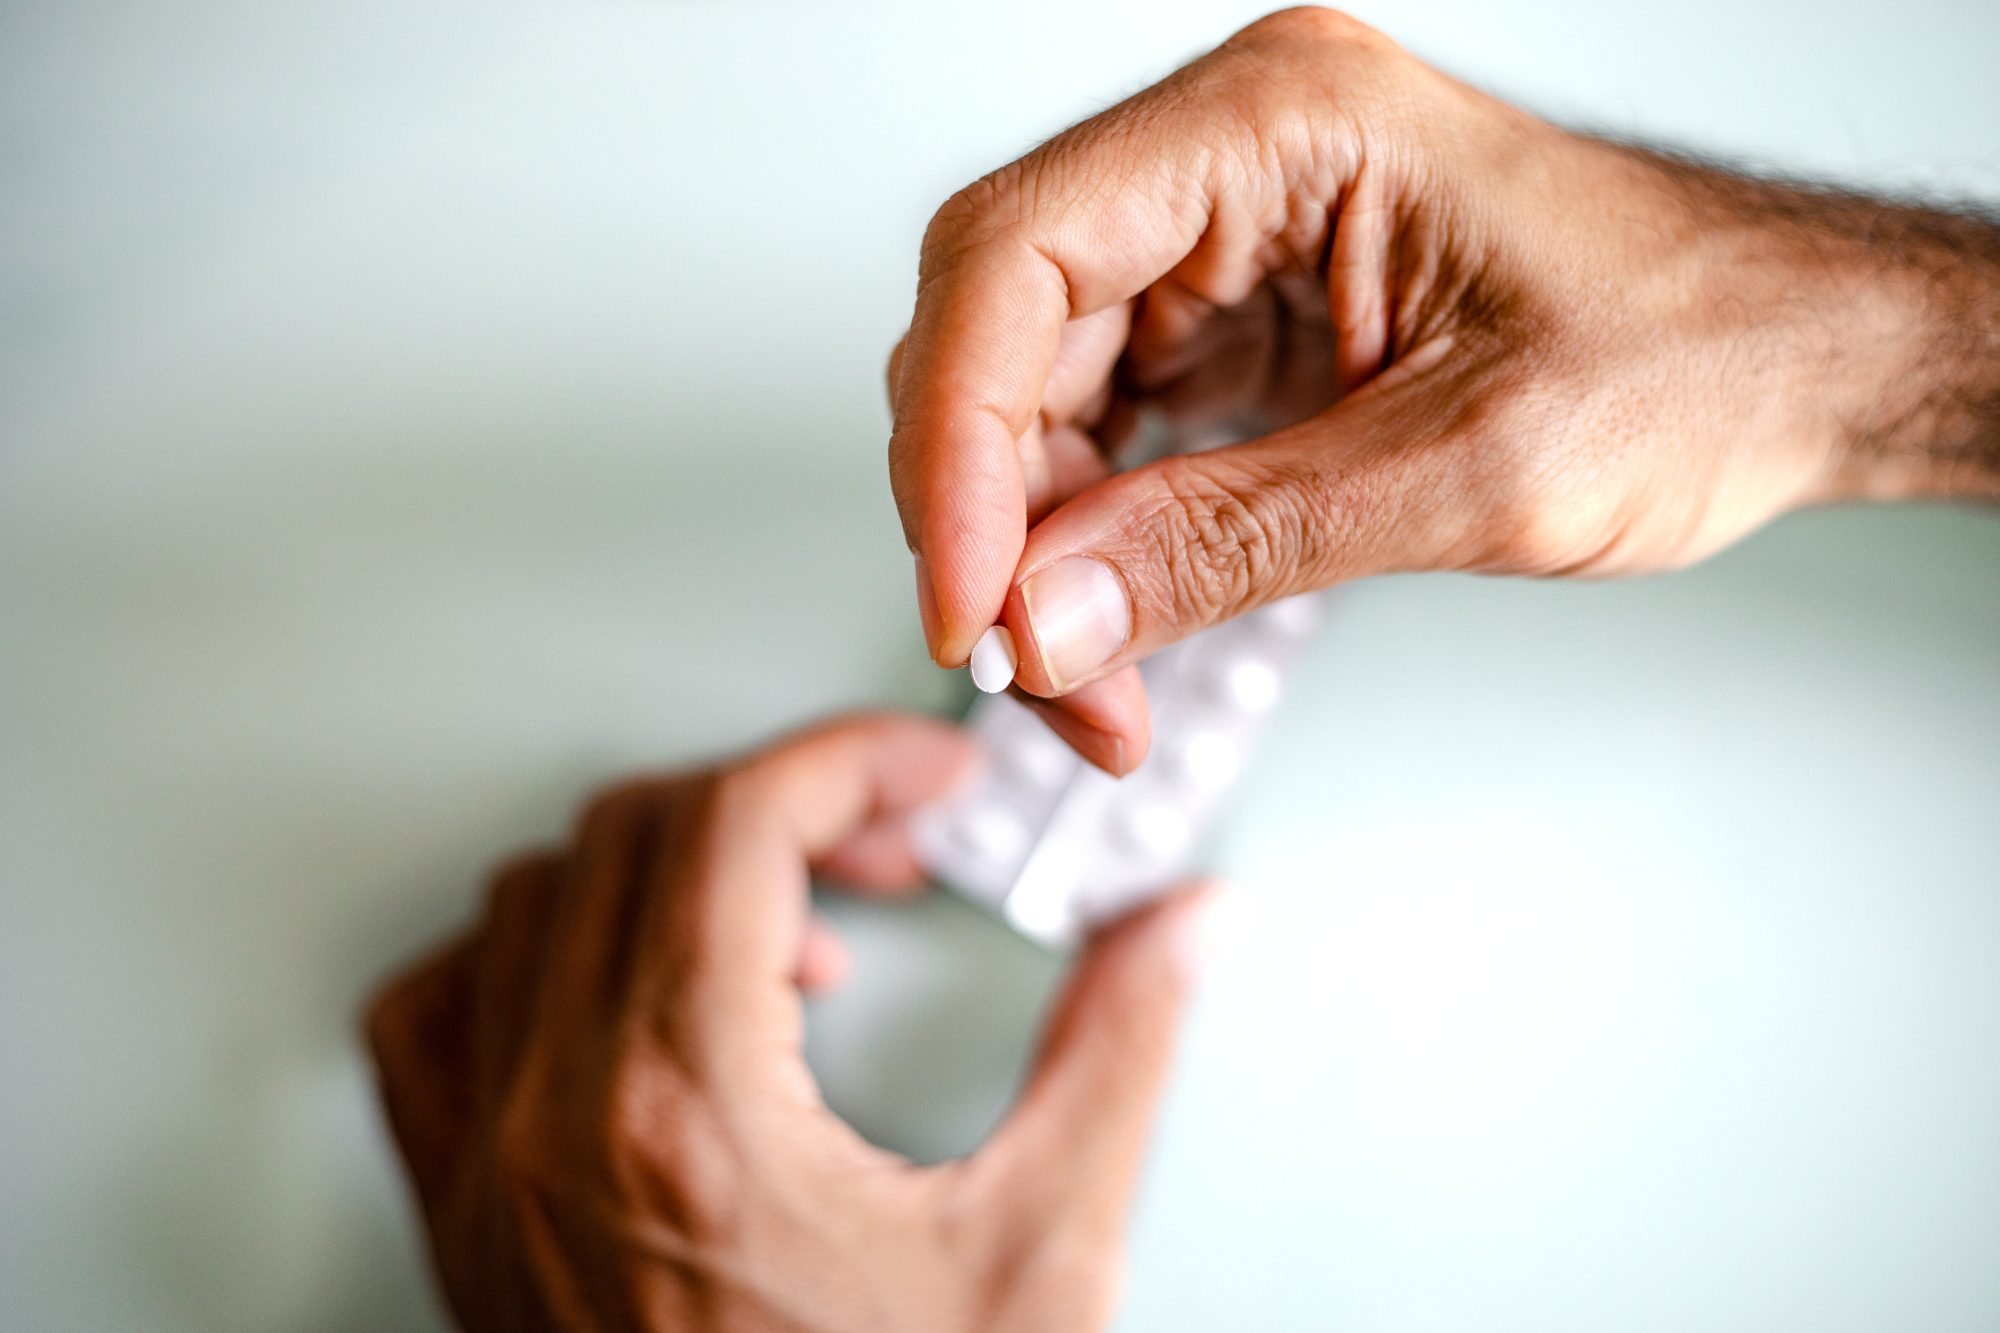 Una píldora anticonceptiva masculina podría empezar a probarse pronto en humanos